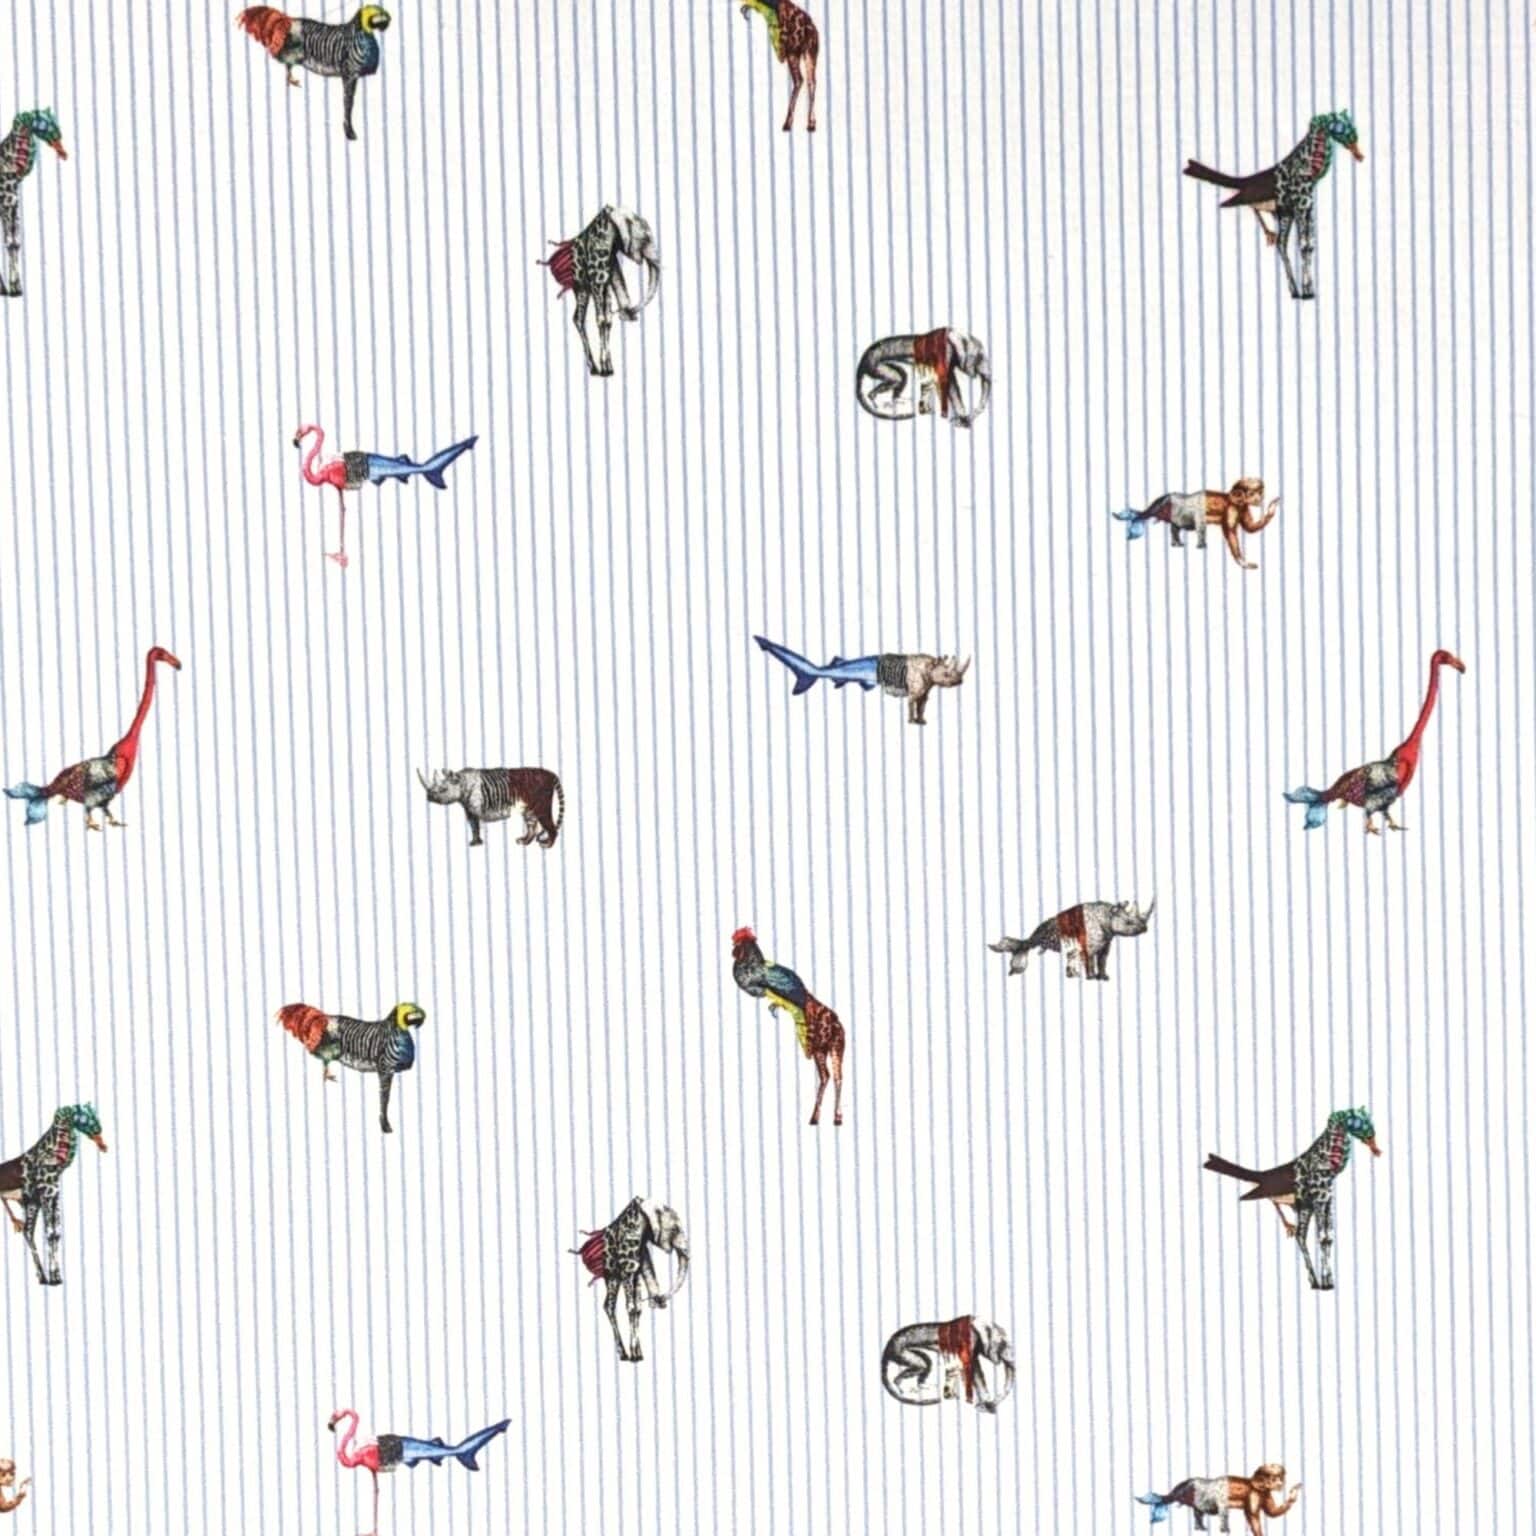 Cotton Fabric - Animal Mix Up - Ex-Designer - 145cm Wide